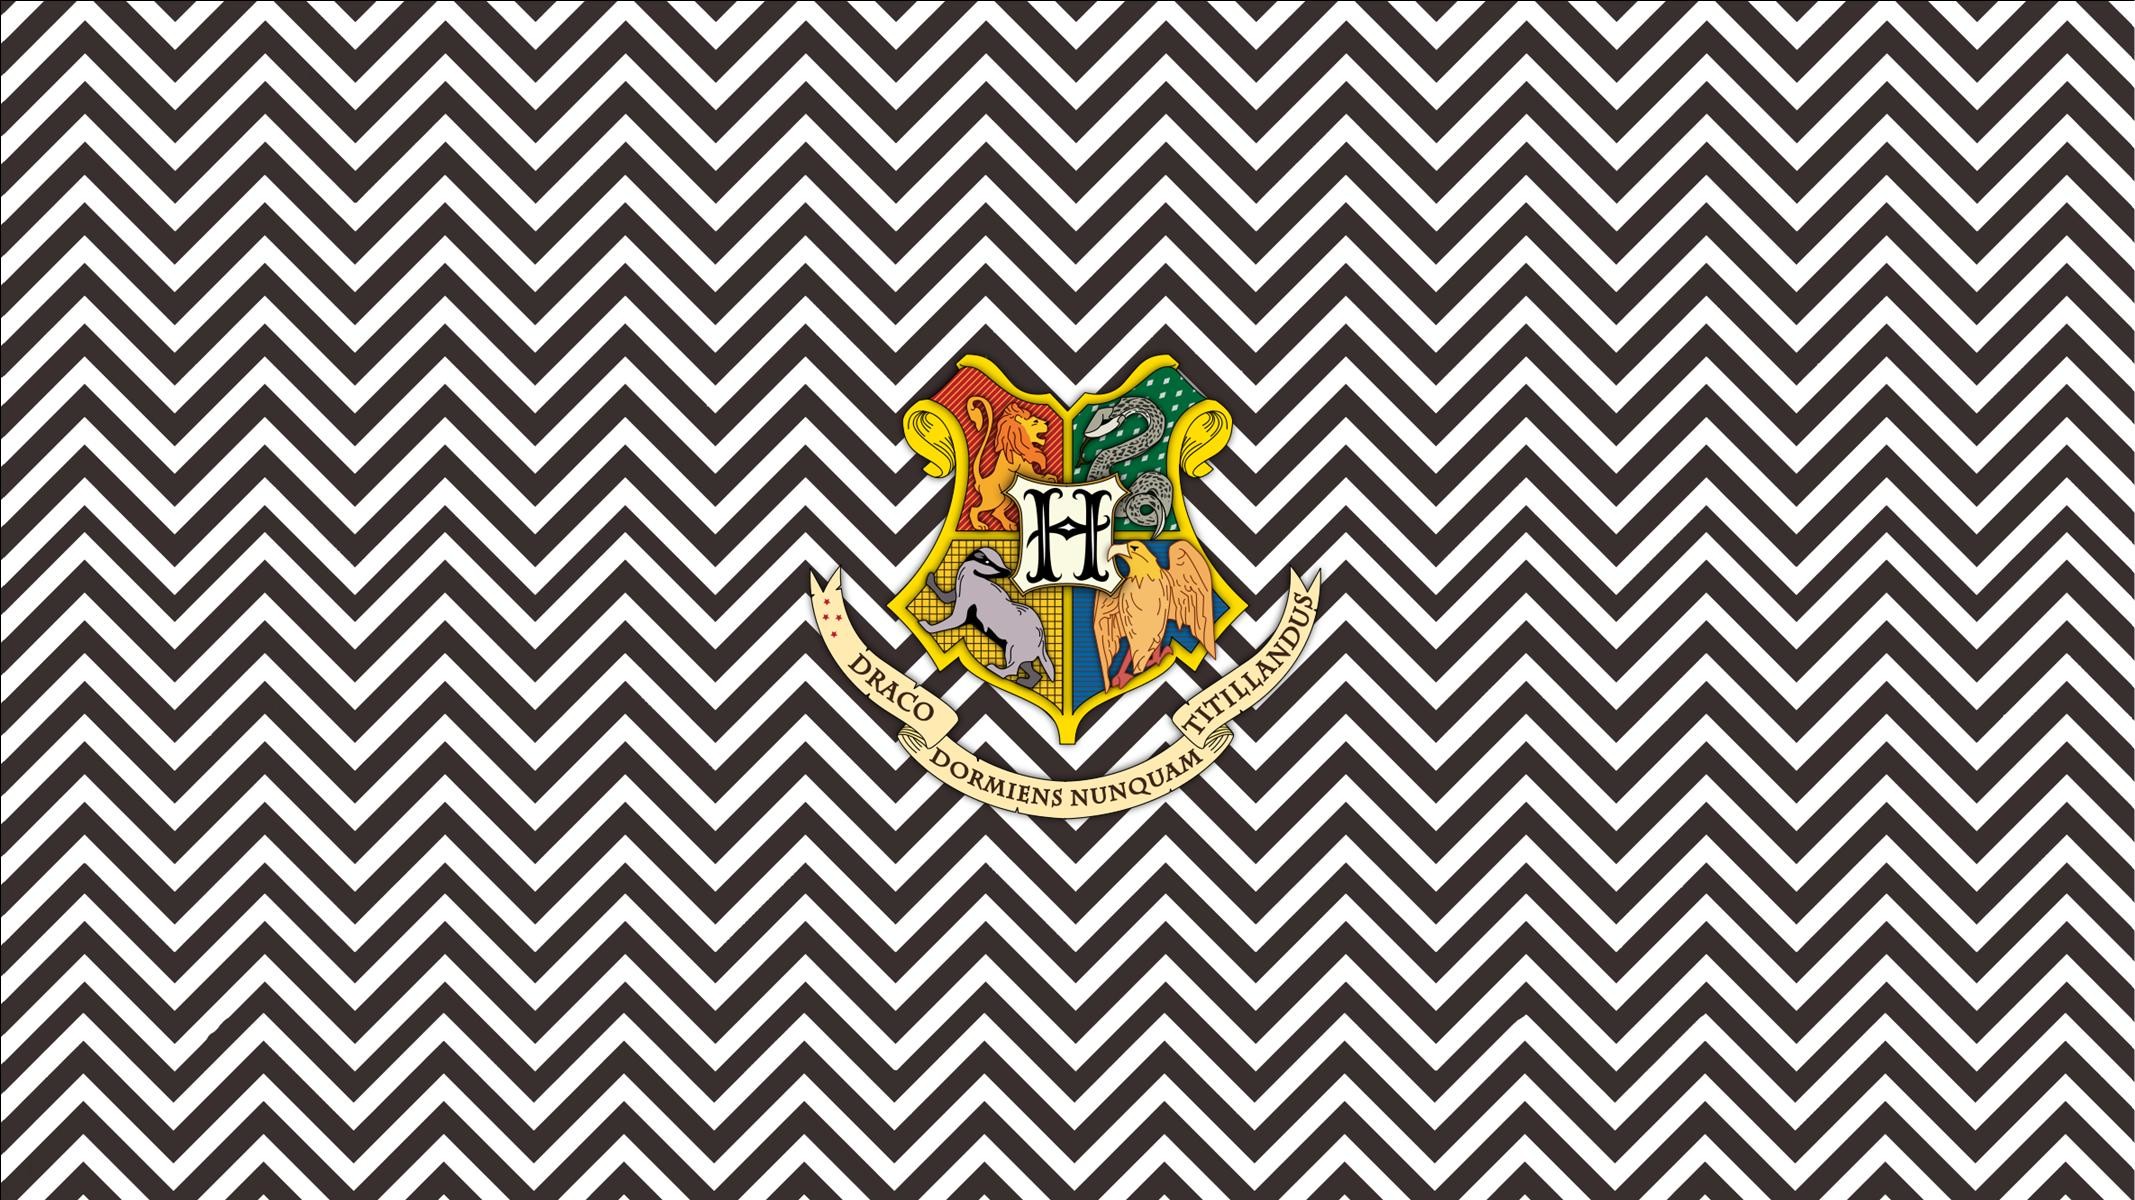 Hogwarts Crest on chevron widescreen desktop wallpaper Widescreen Wallpaper  made by Deanna